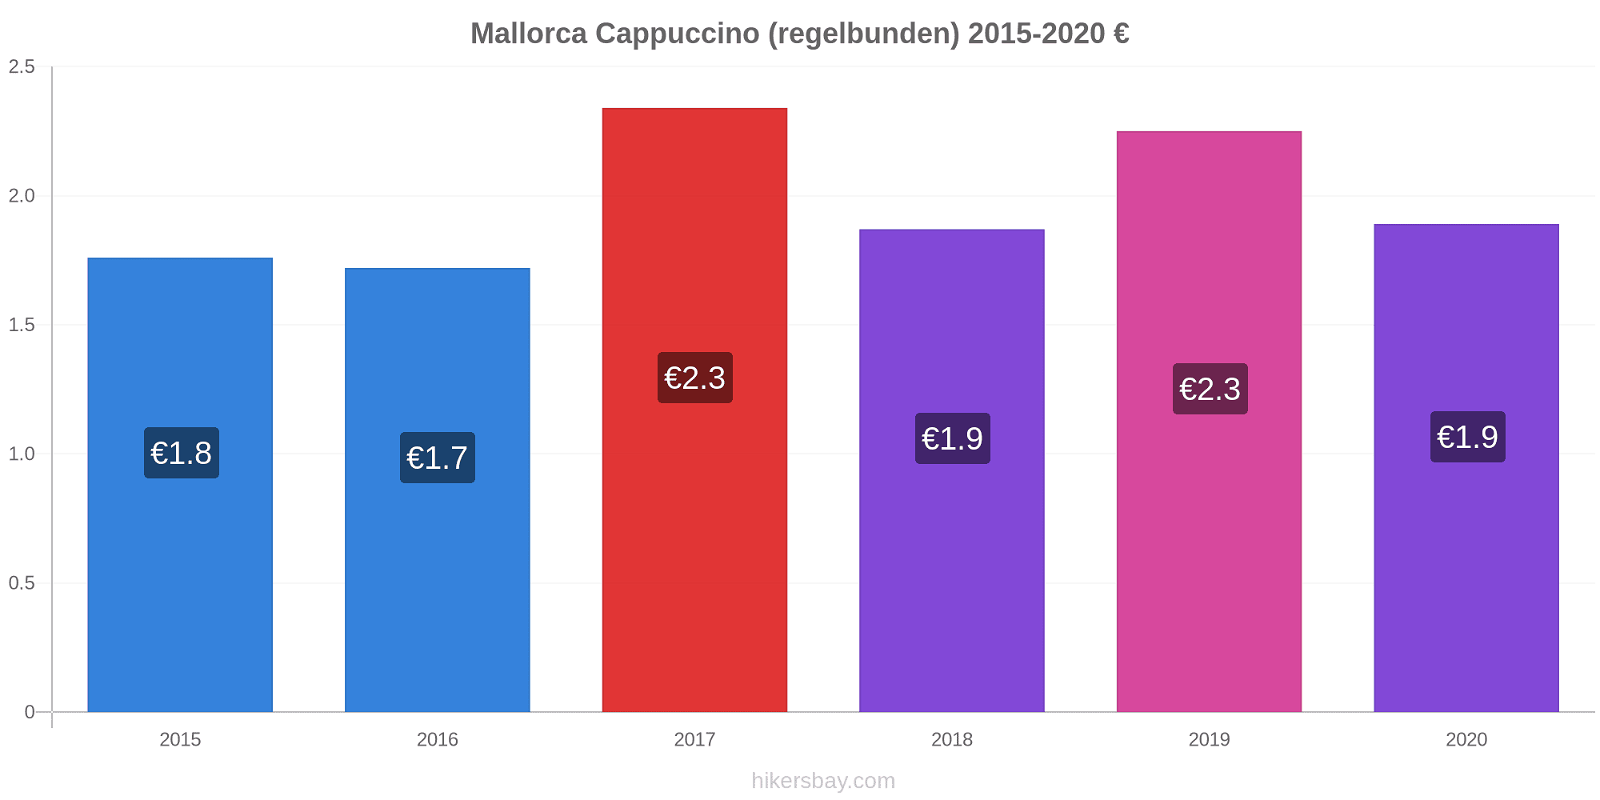 Mallorca prisförändringar Cappuccino (regelbunden) hikersbay.com